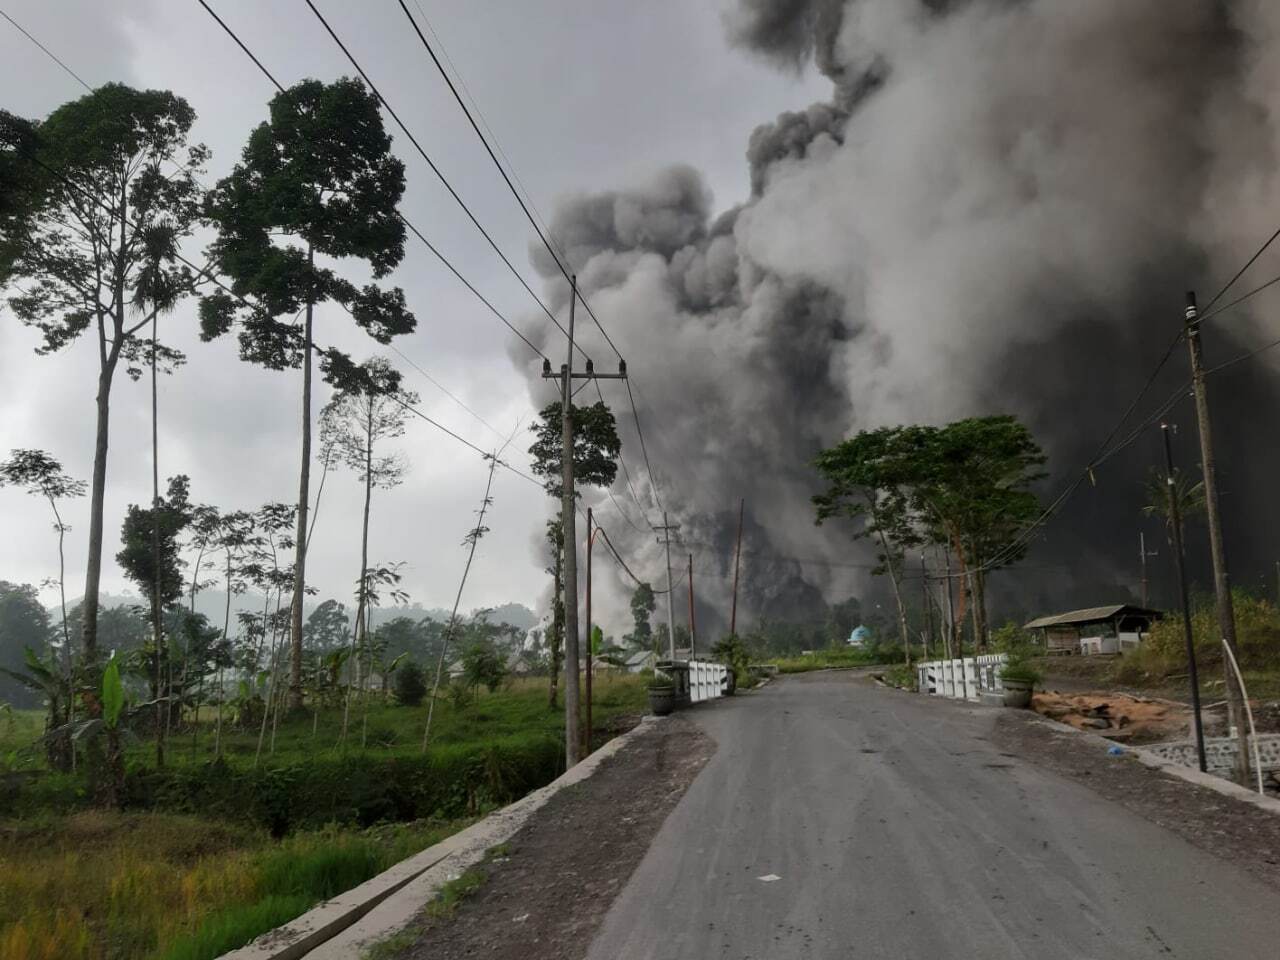 В Индонезии на острове Ява проснулся вулкан Семеру: объявлен максимальный уровень опасности. Фото и видео